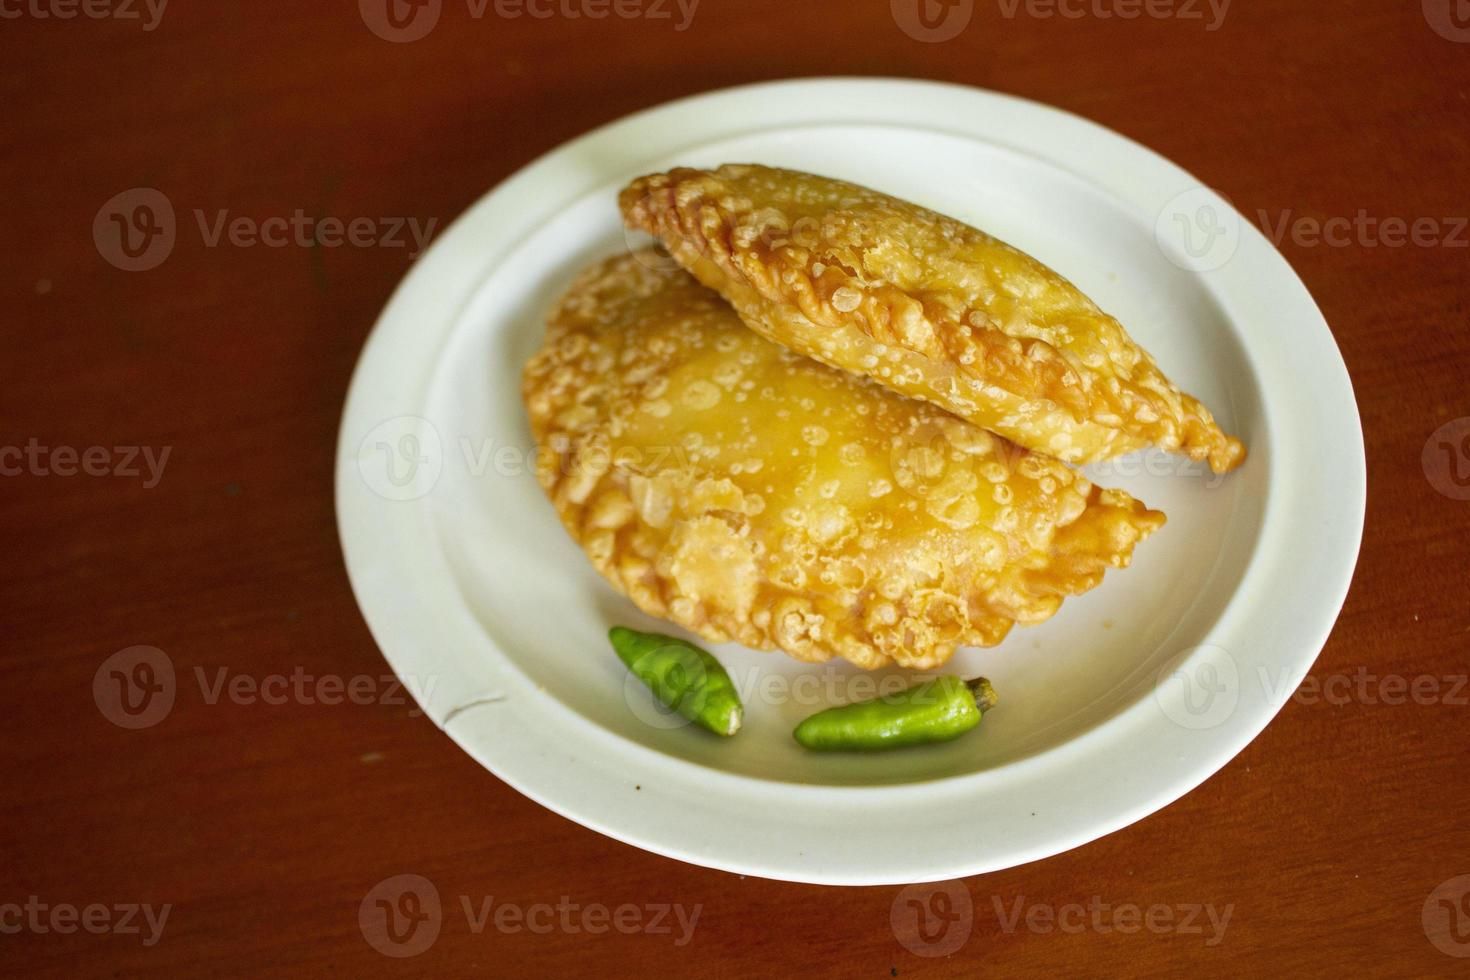 pastie kuchen oder gebäckkuchen oder kue pastell serviert mit grünem chili in einem kleinen teller auf holzhintergrund. indonesischer pastellkuchen foto